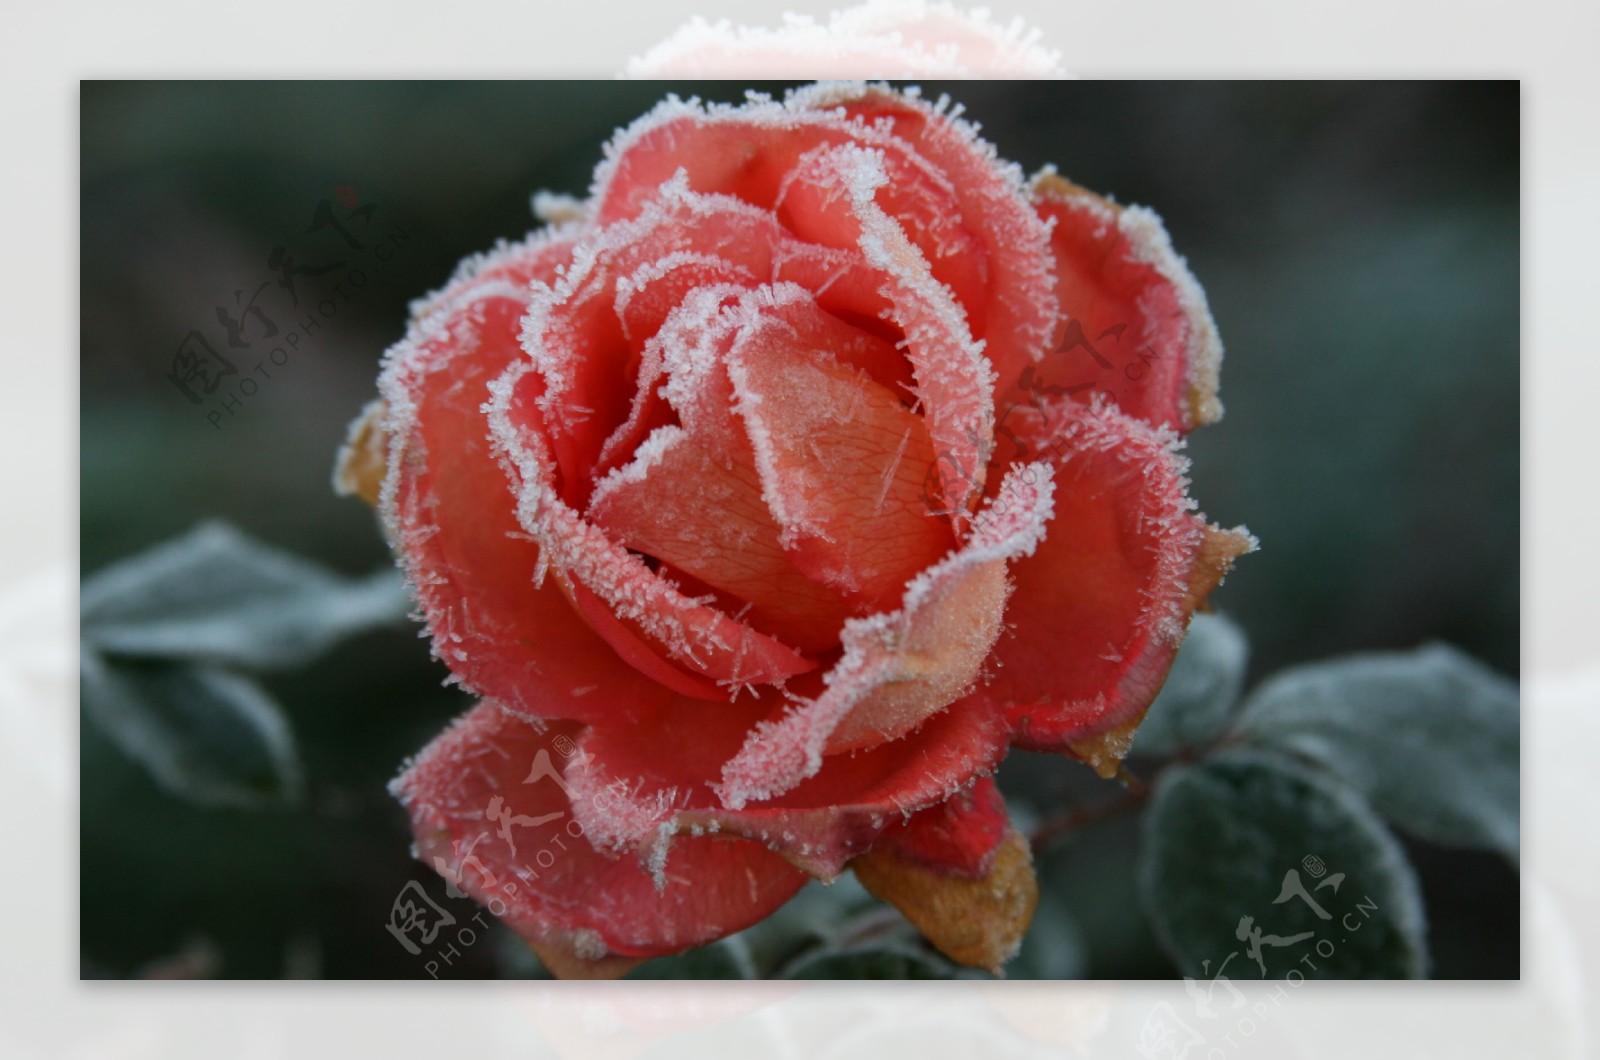 冰雪香槟玫瑰图片